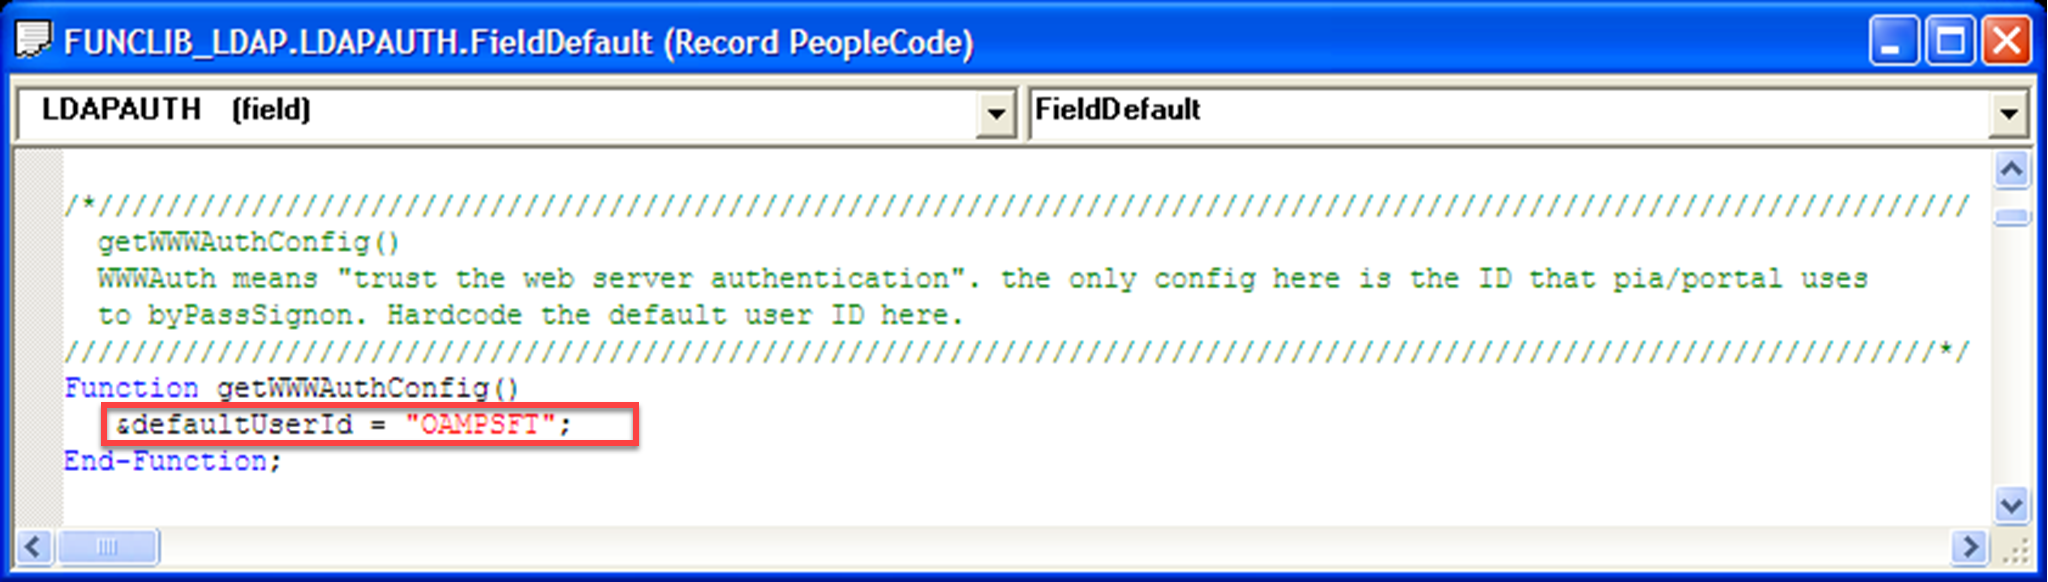 Cuplikan layar nilai ID Pengguna default sama dengan OAMPSFT di bawah Fungsi.